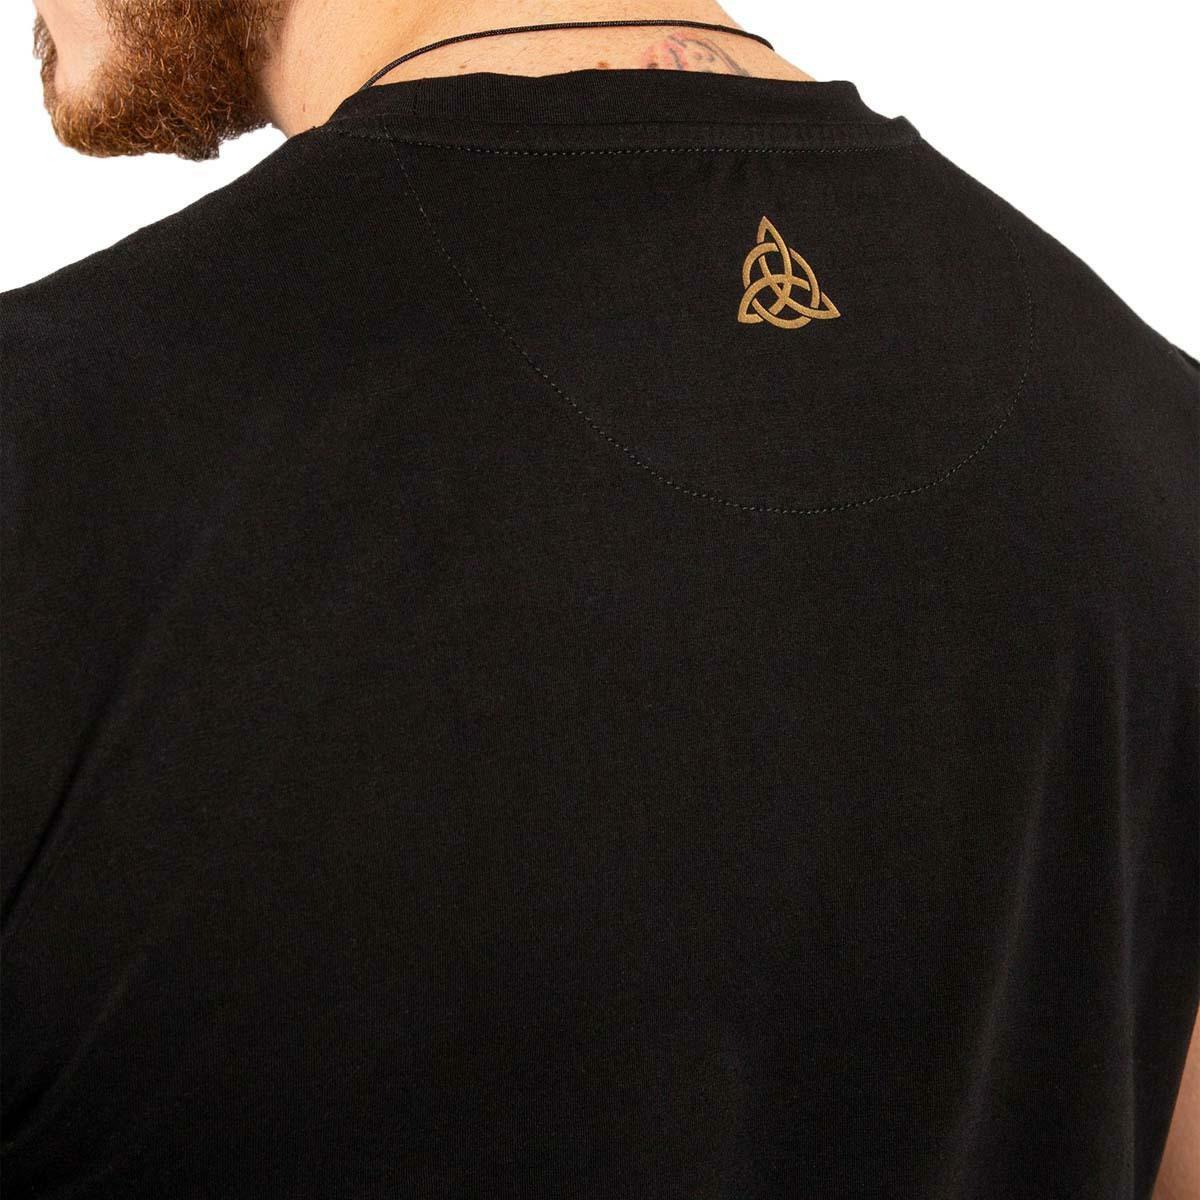 Venum Assassins Creed T-Shirt VEN-04487-001